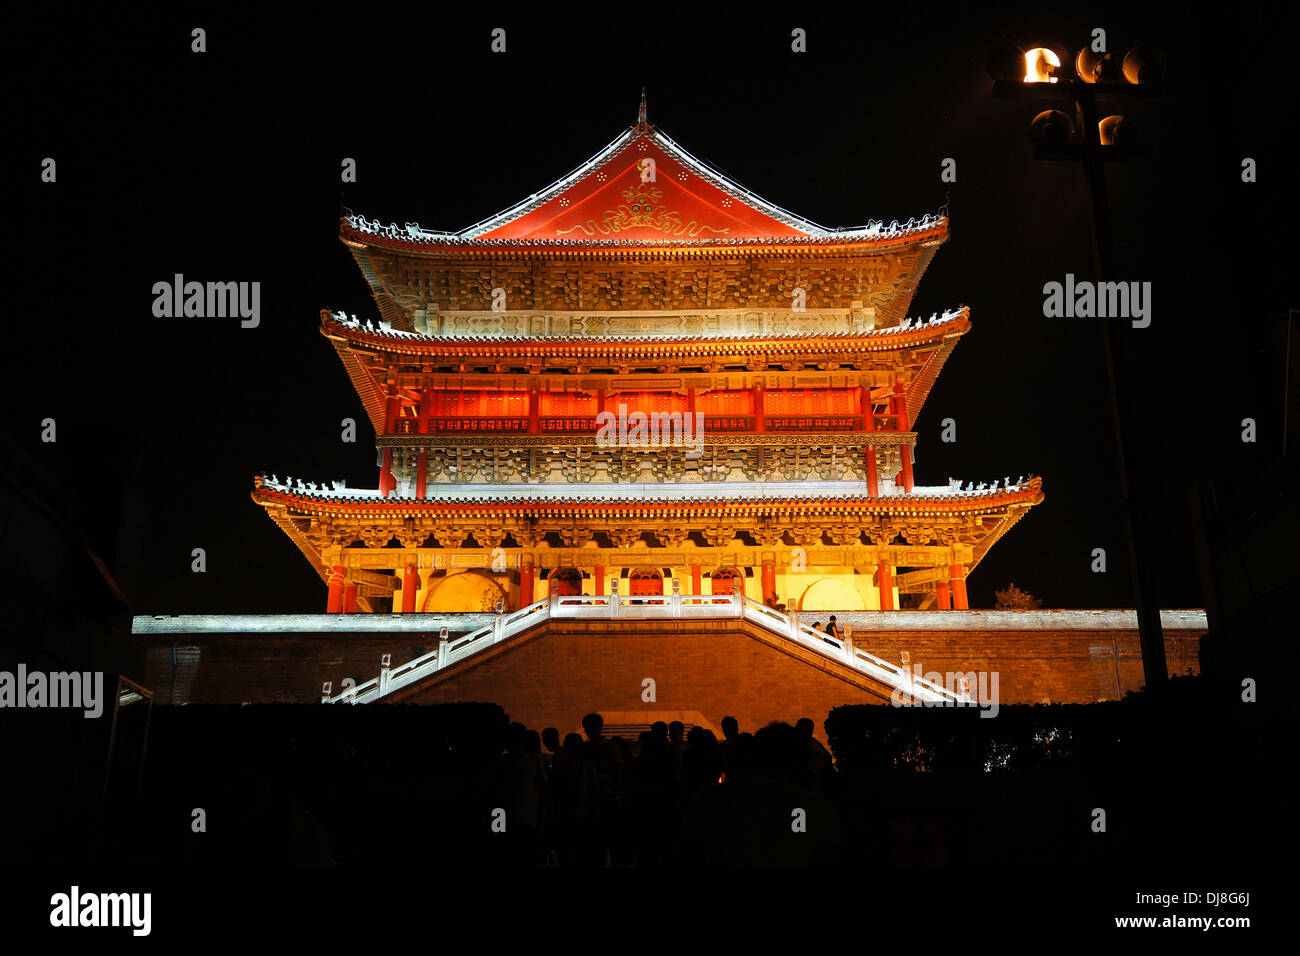 Xi'an la torre del tambor por la noche, Xi'an, China Foto de stock